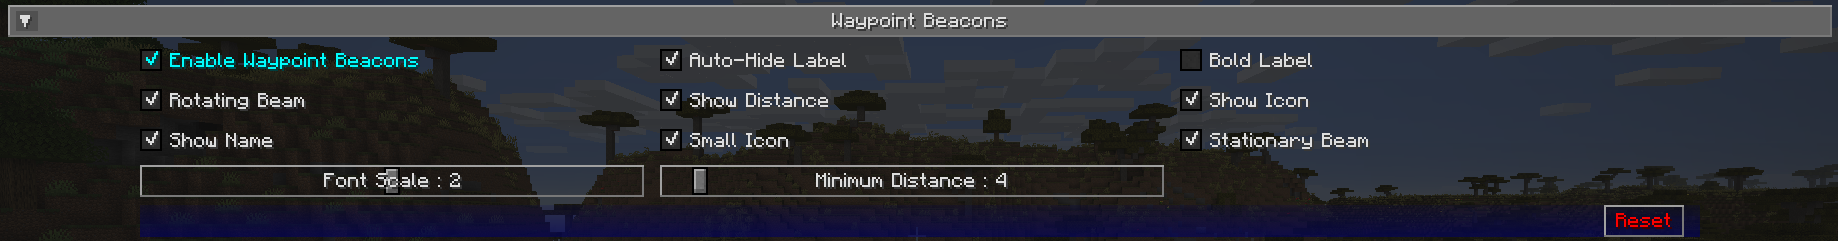 Waypoint beacon settings